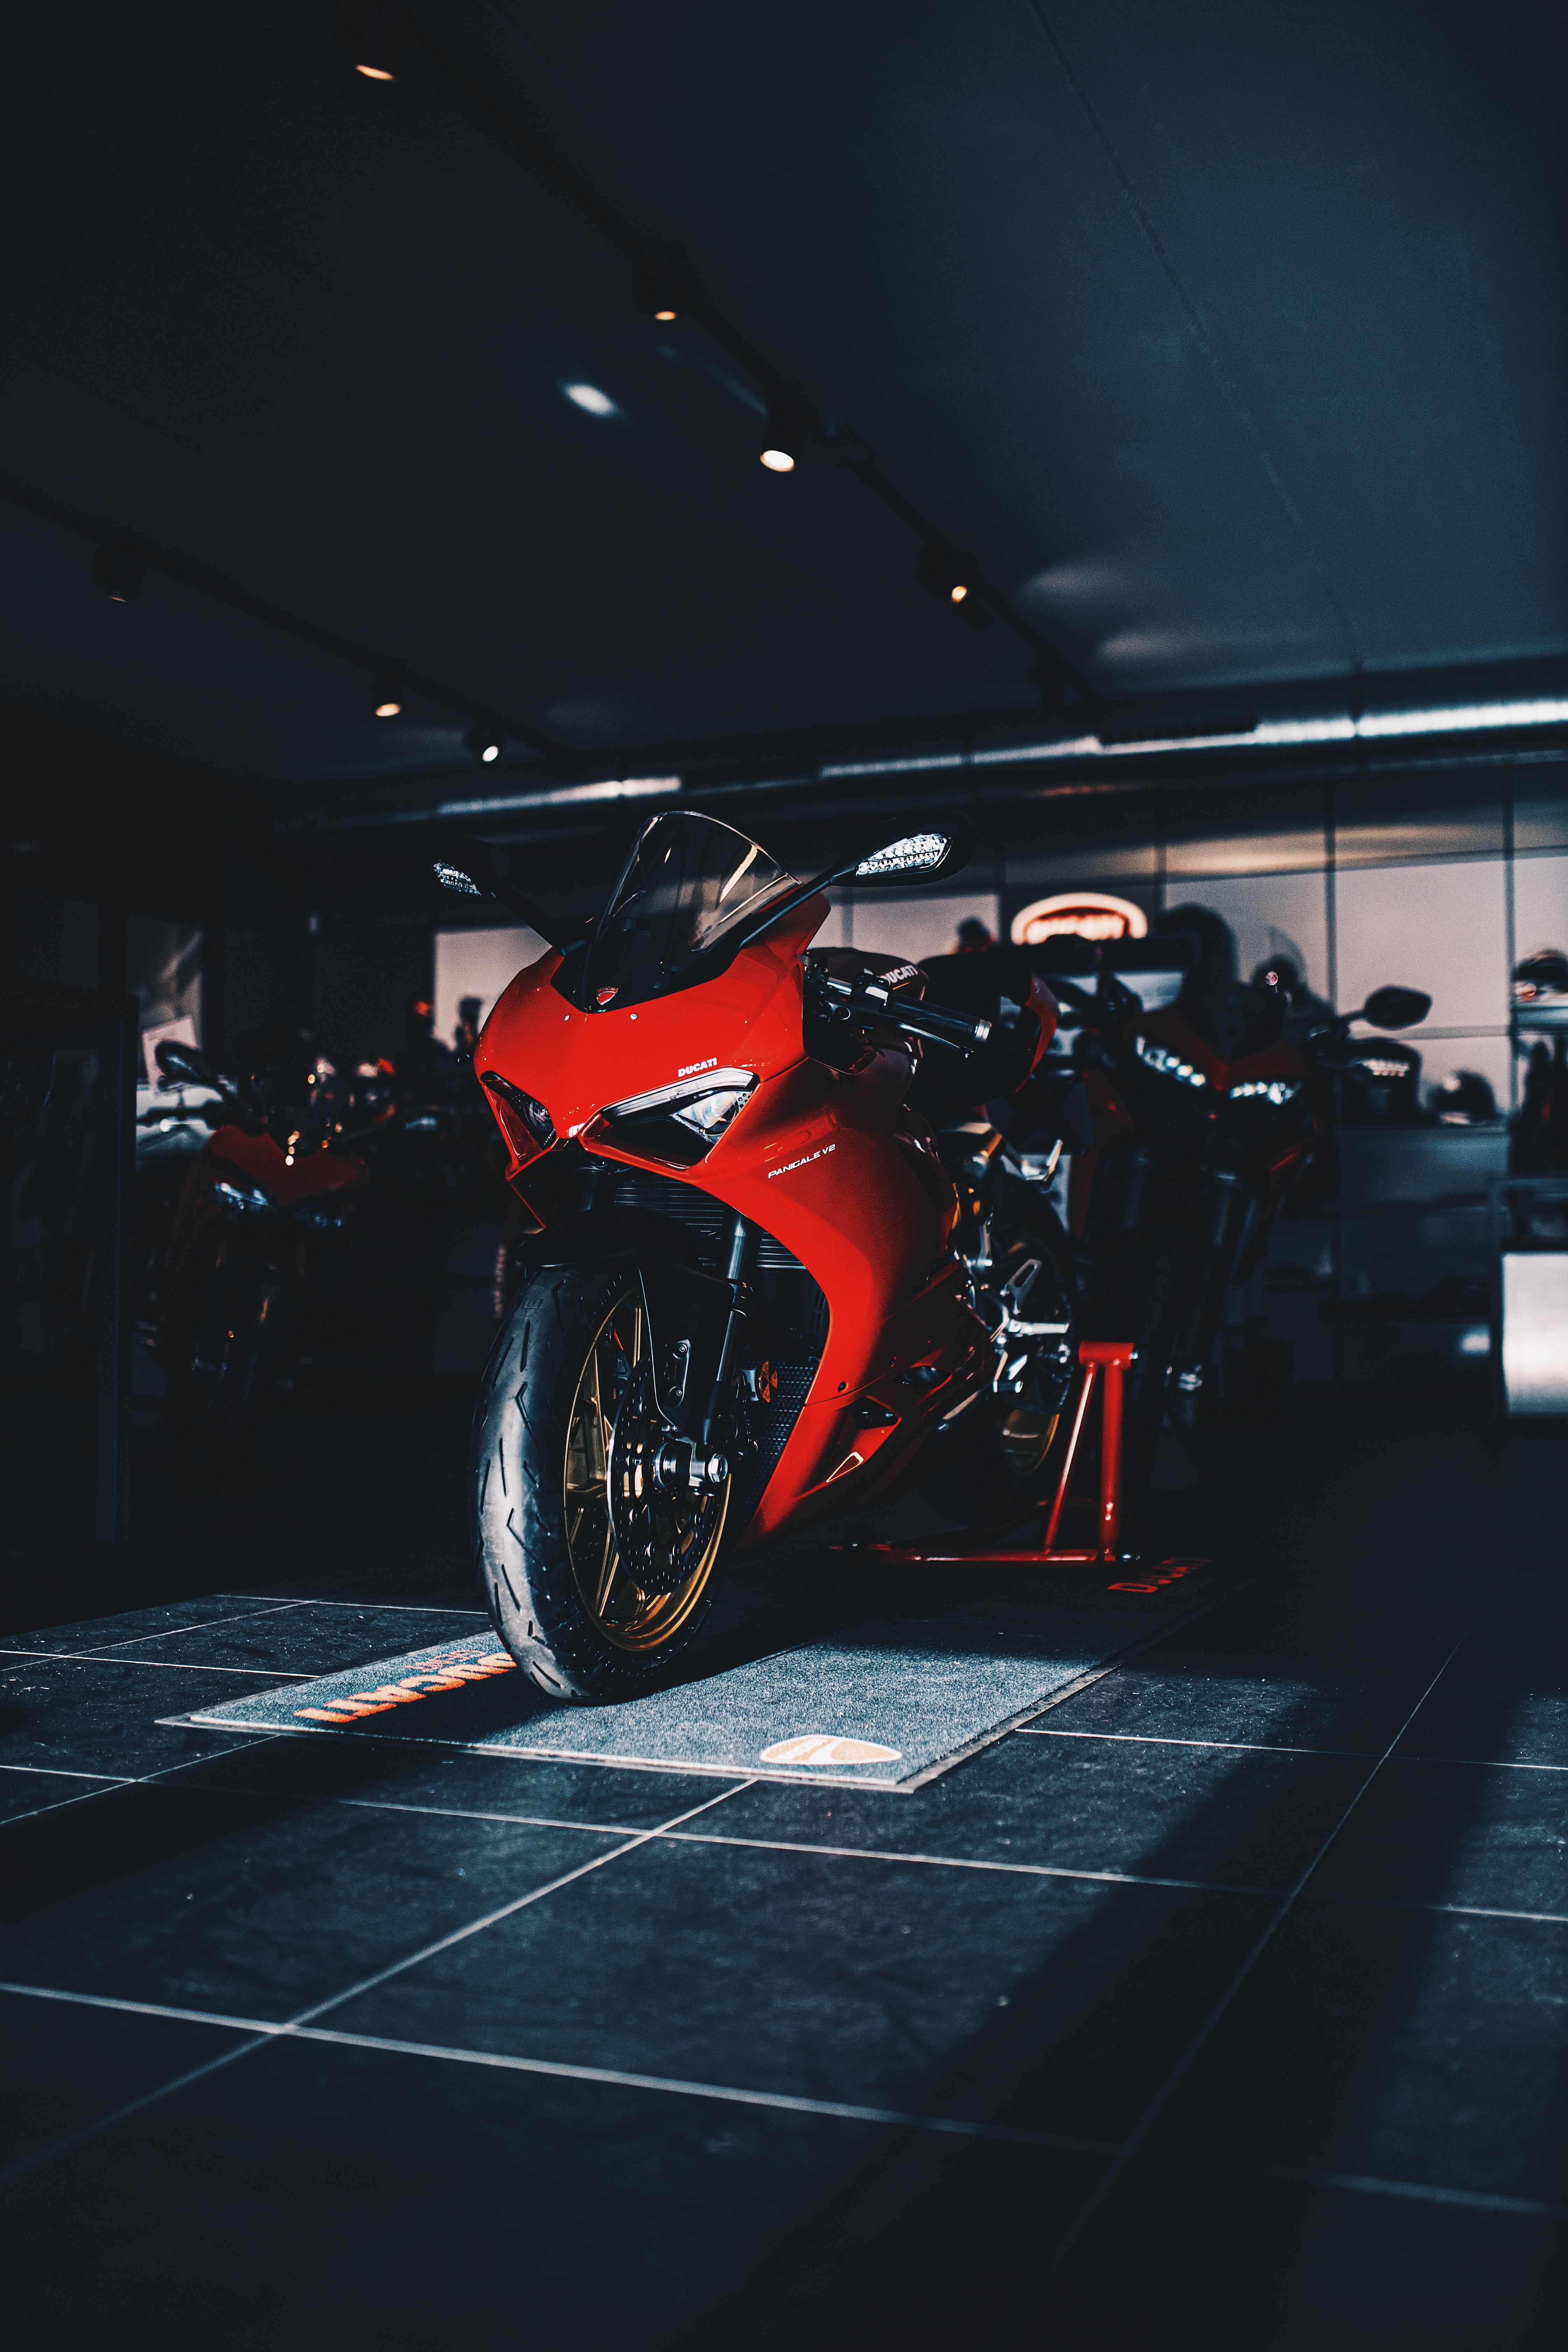 HQ Ducati Background